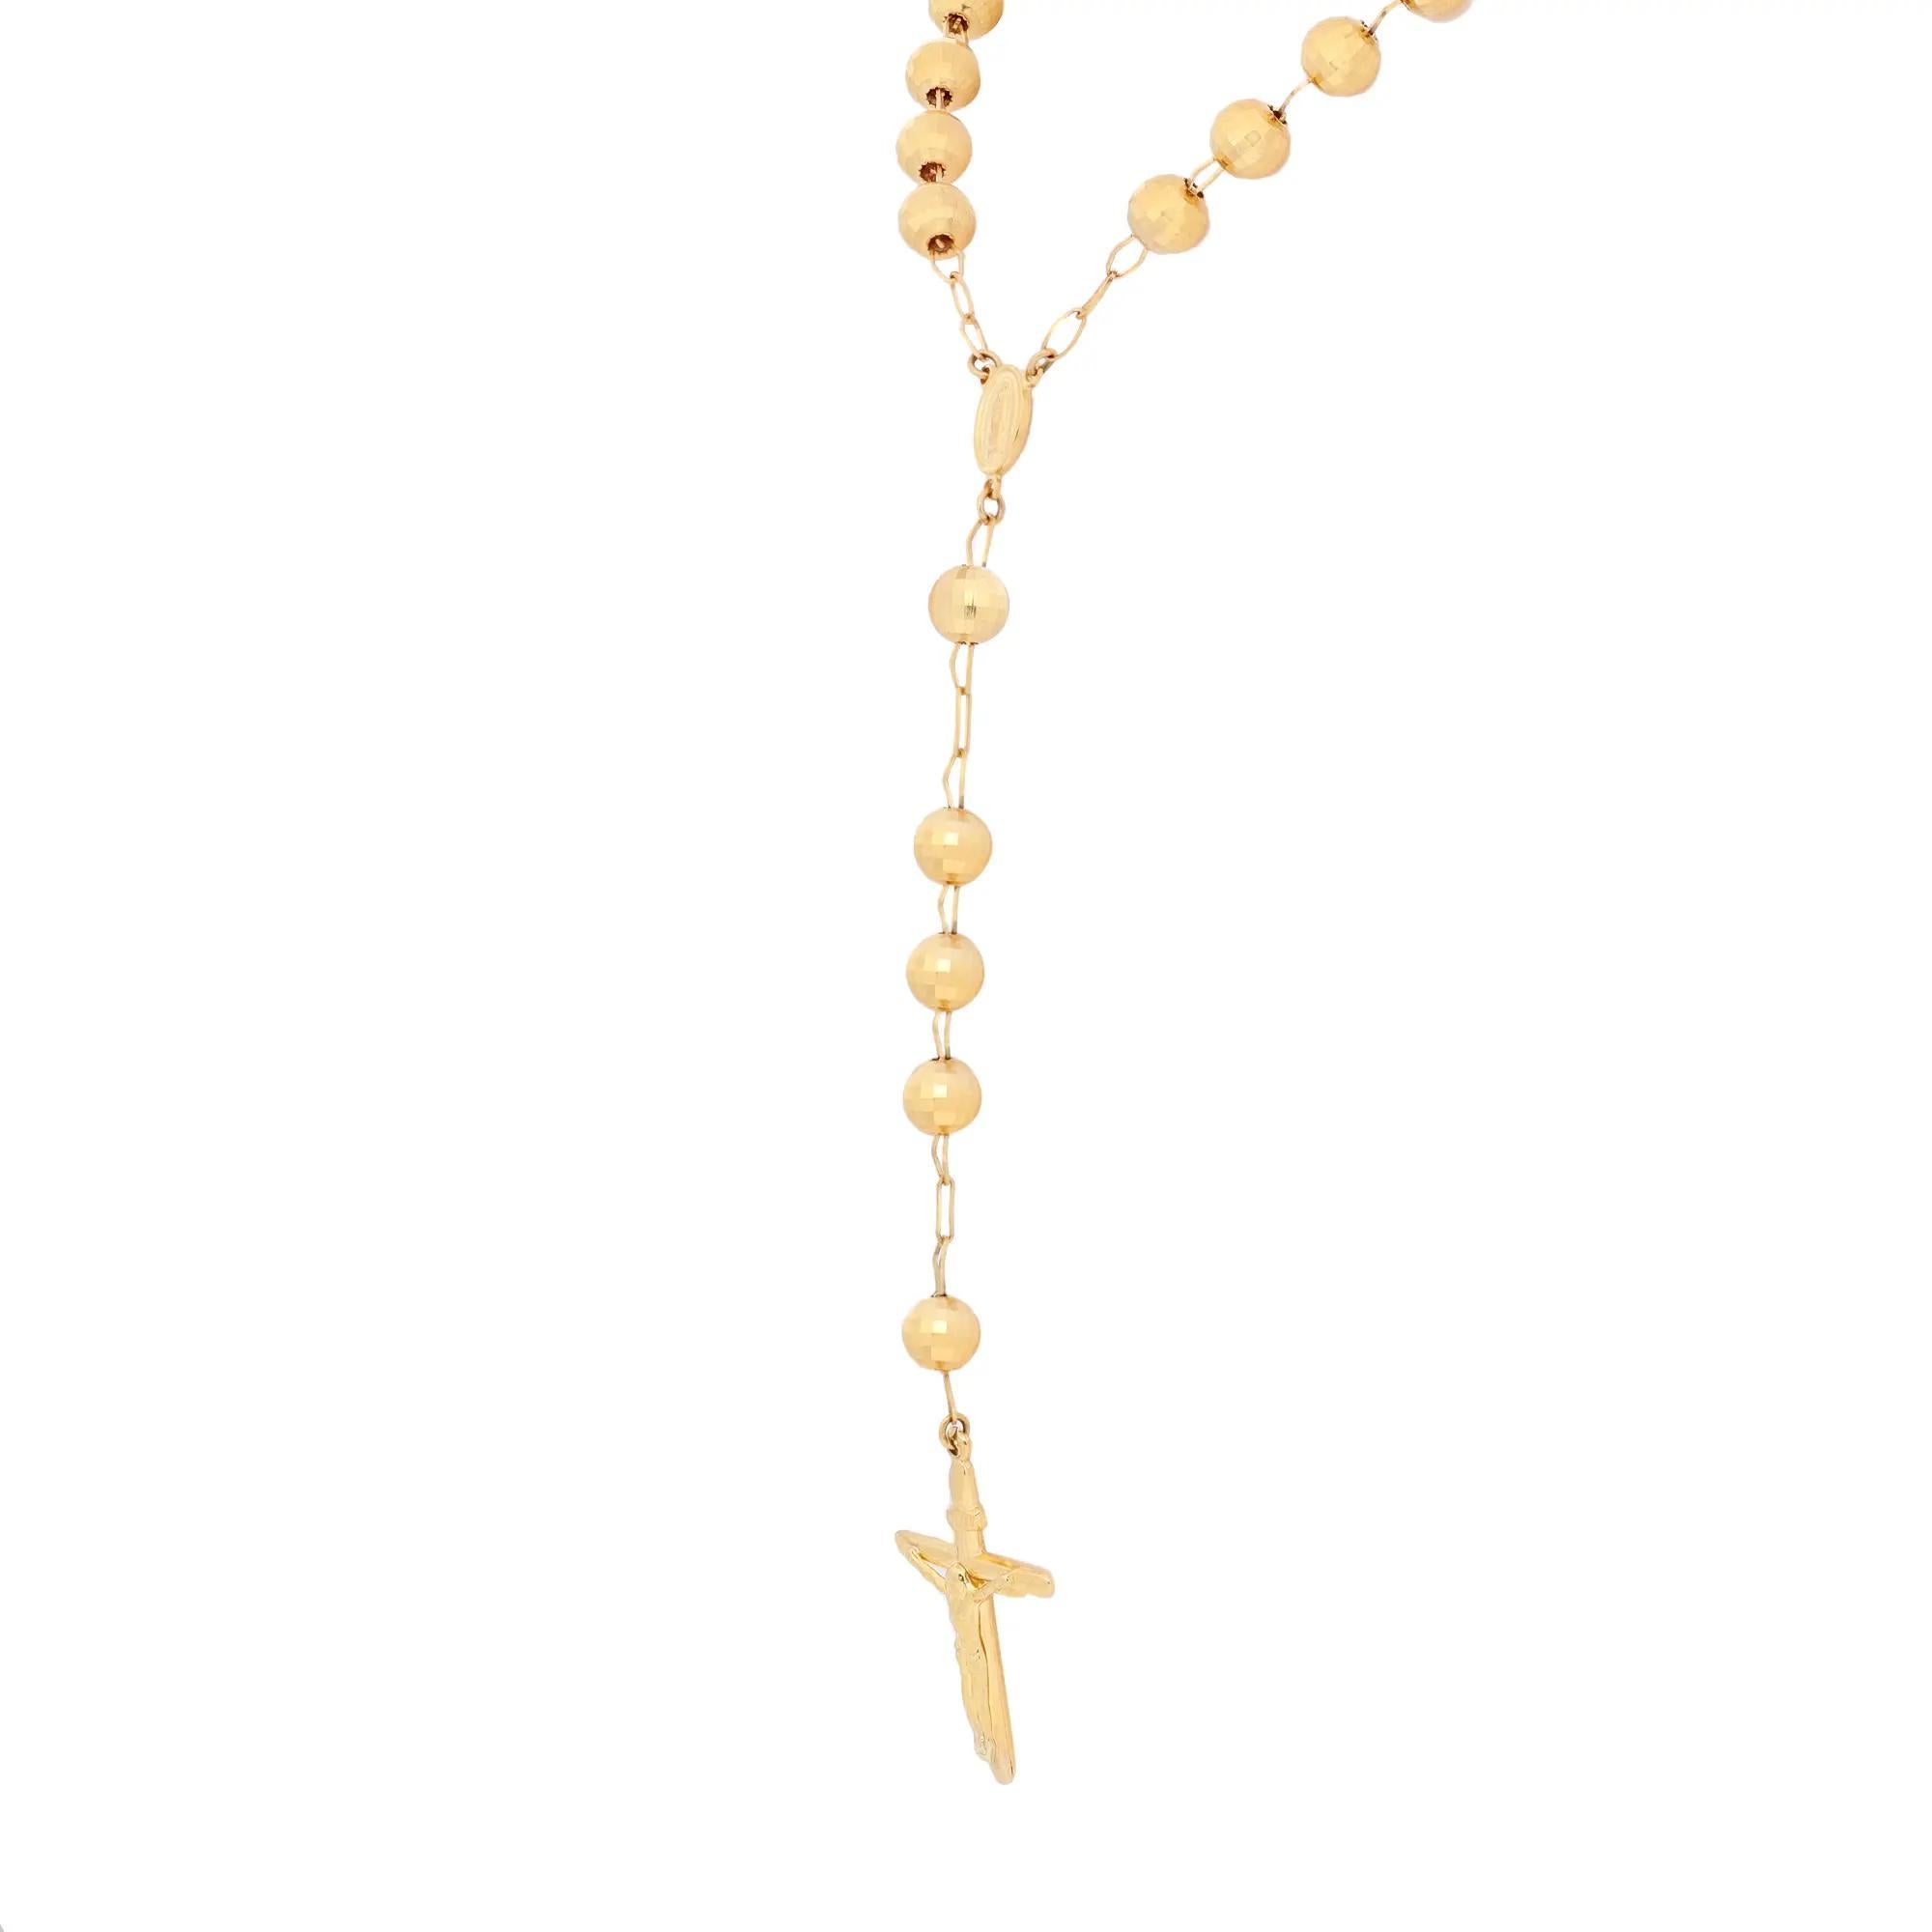 Diese vom Rosenkranz inspirierte Perlenkette mit einem Medaillon der Heiligen Jungfrau und einem mächtigen Kreuz ist ein mutiges Glaubensbekenntnis. Gefertigt aus glänzendem 14-karätigem Gelbgold. Kettenlänge: 30 Zoll. Kreuzgröße: 1,5 Zoll x 1 Zoll.